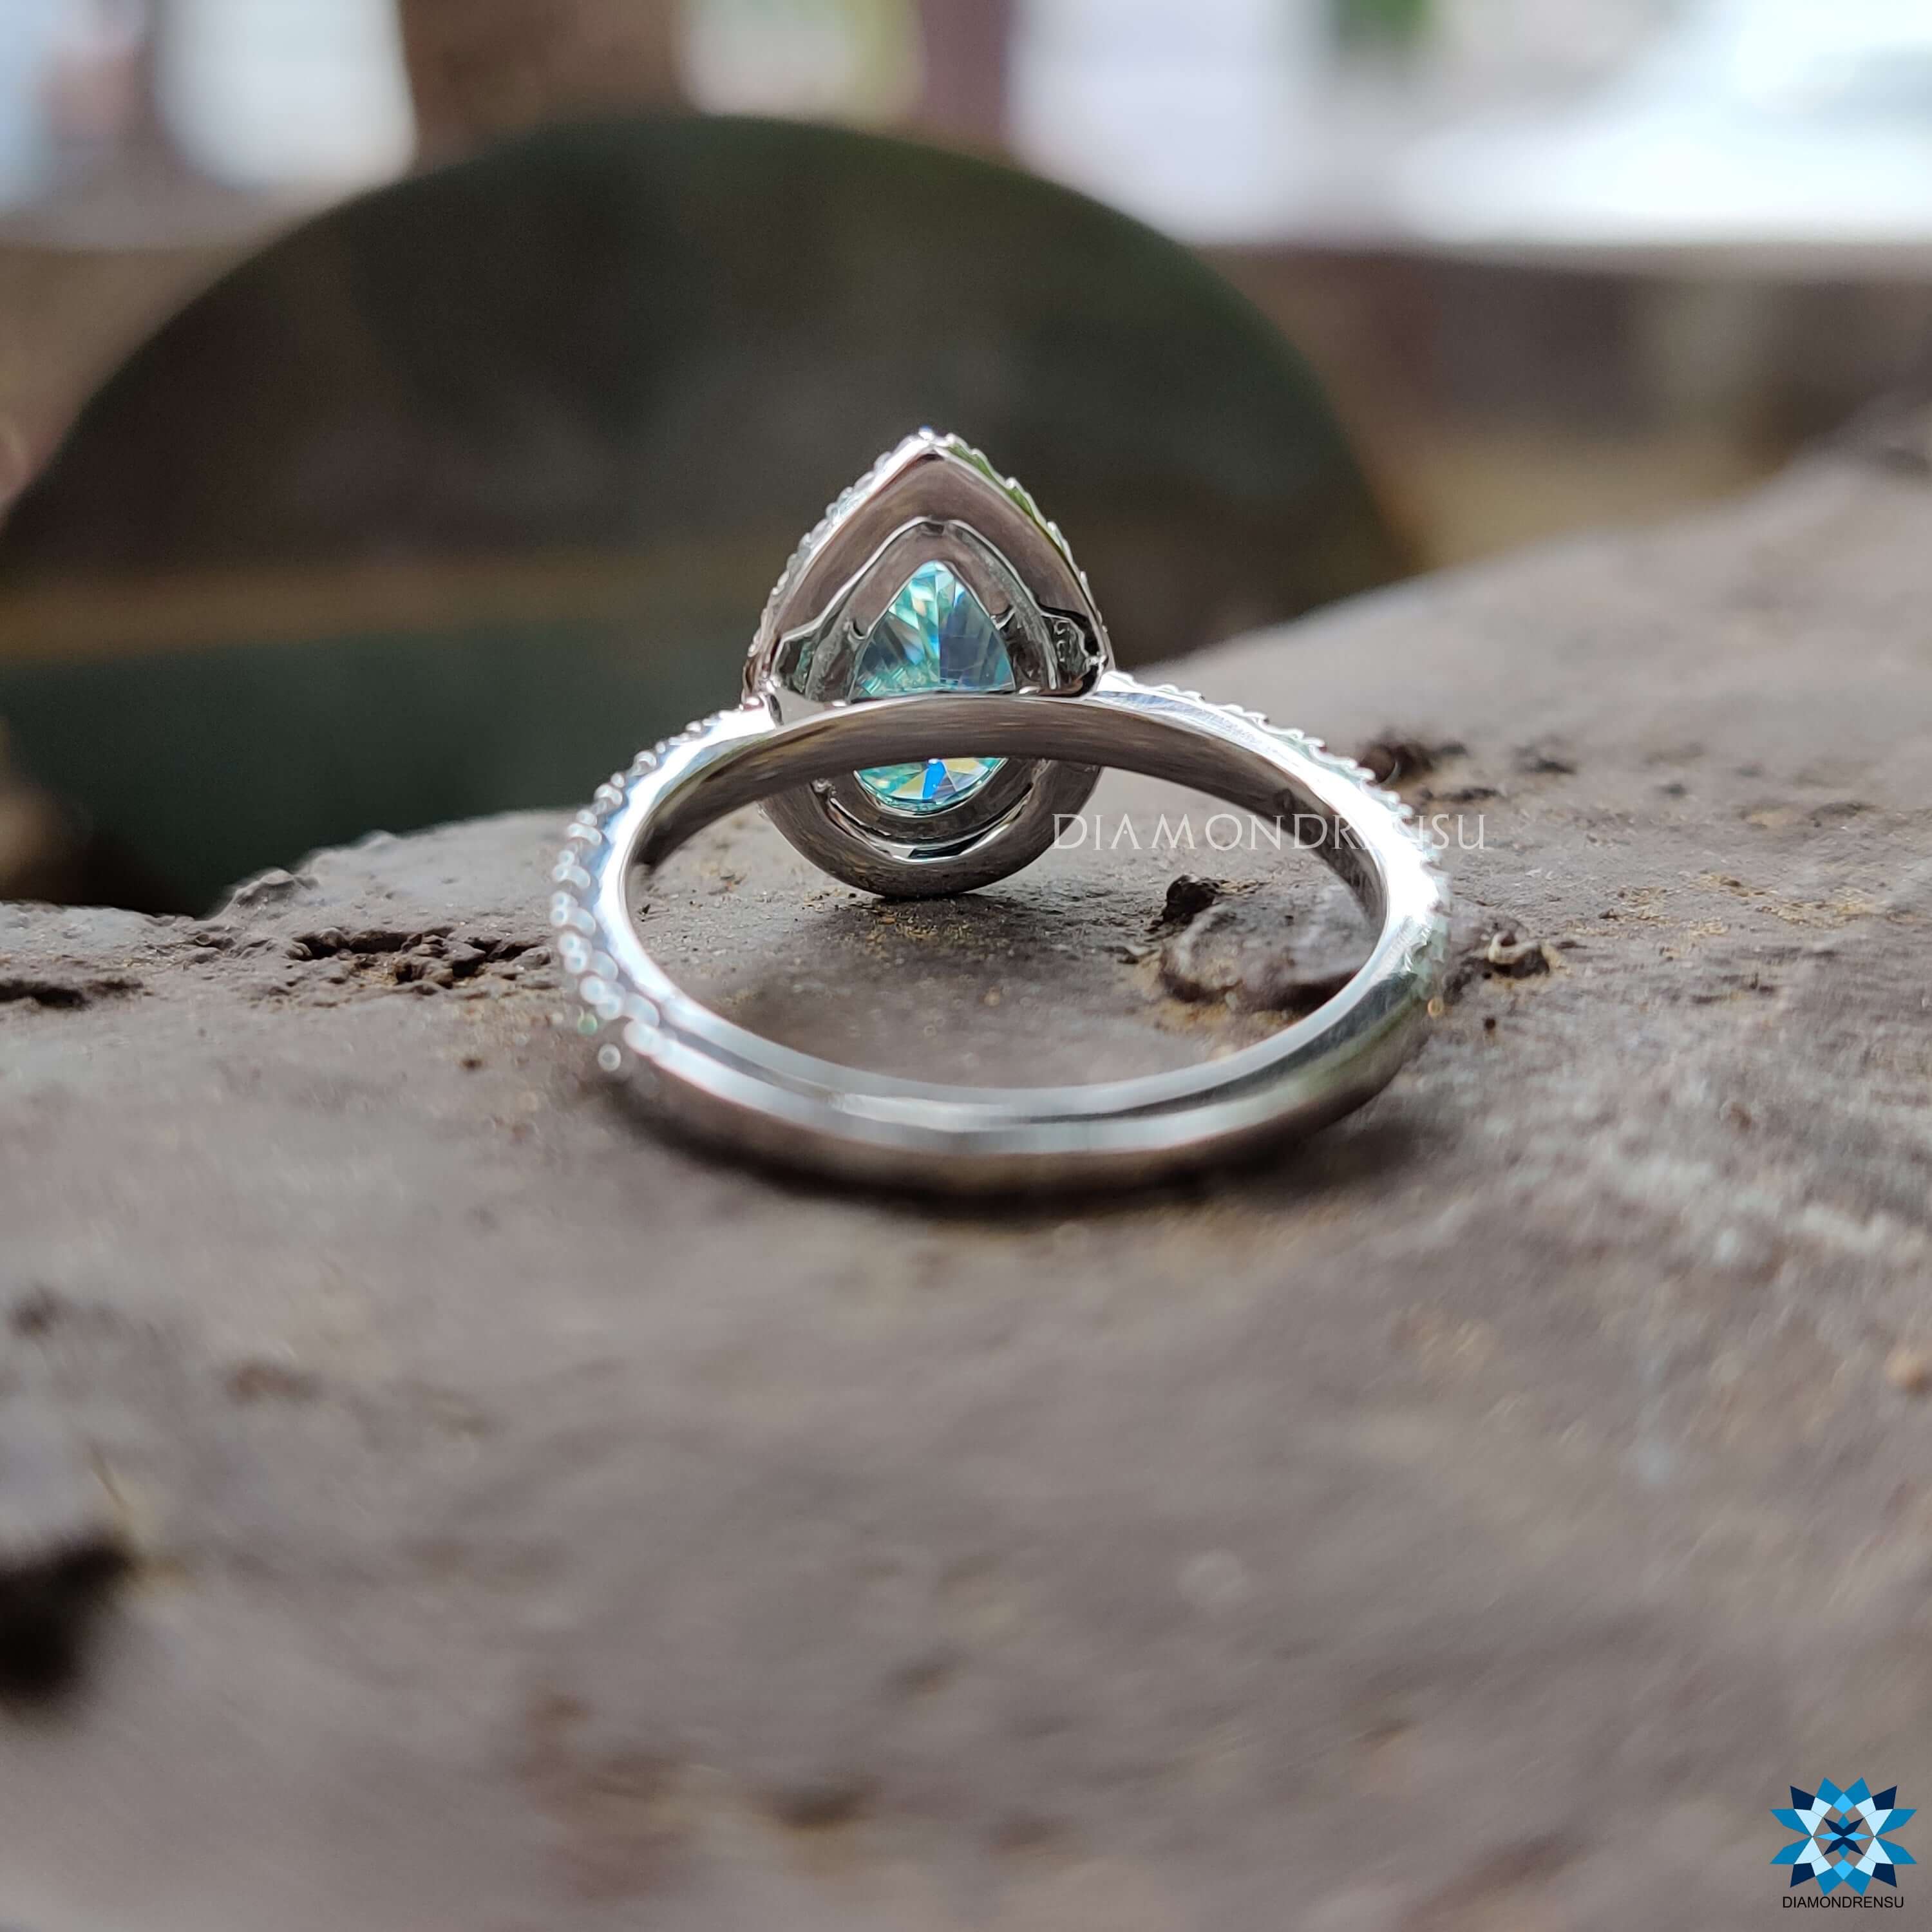 cathedral moissanite engagement ring - diamondrensu